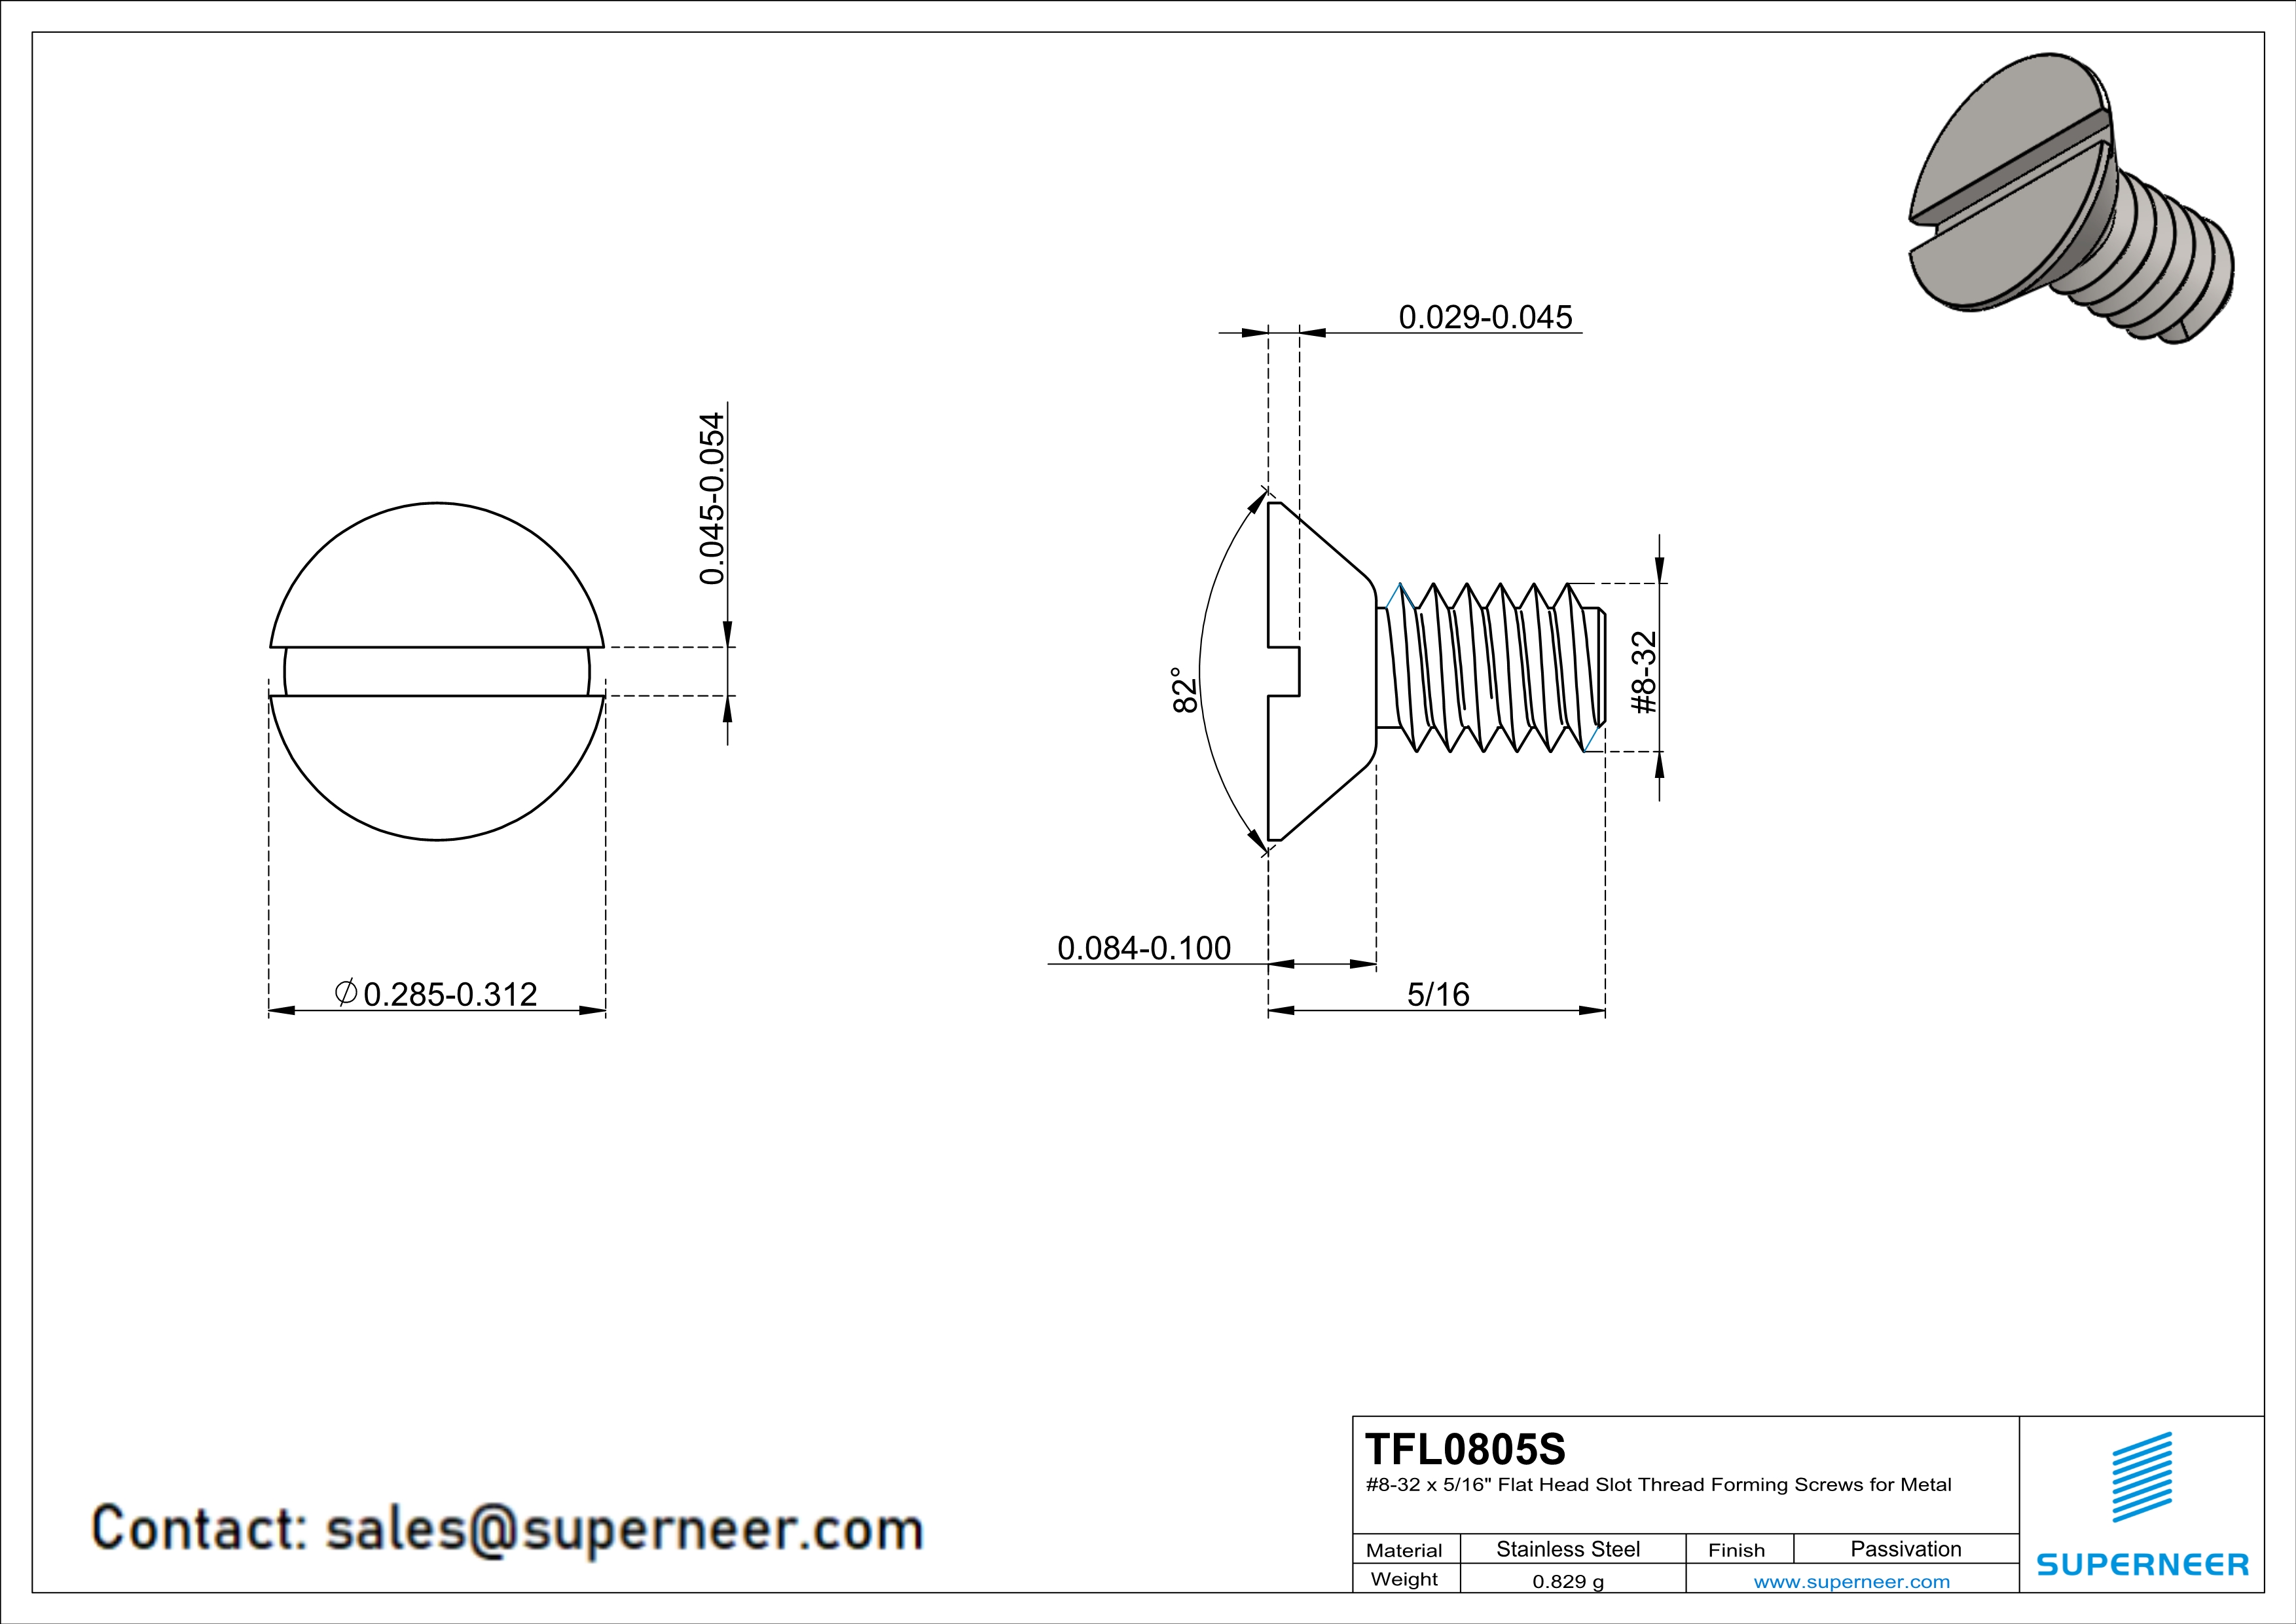 8-32 × 5/16 Flat Head Slot Thread Forming  Screws for Metal  SUS304 Stainless Steel Inox